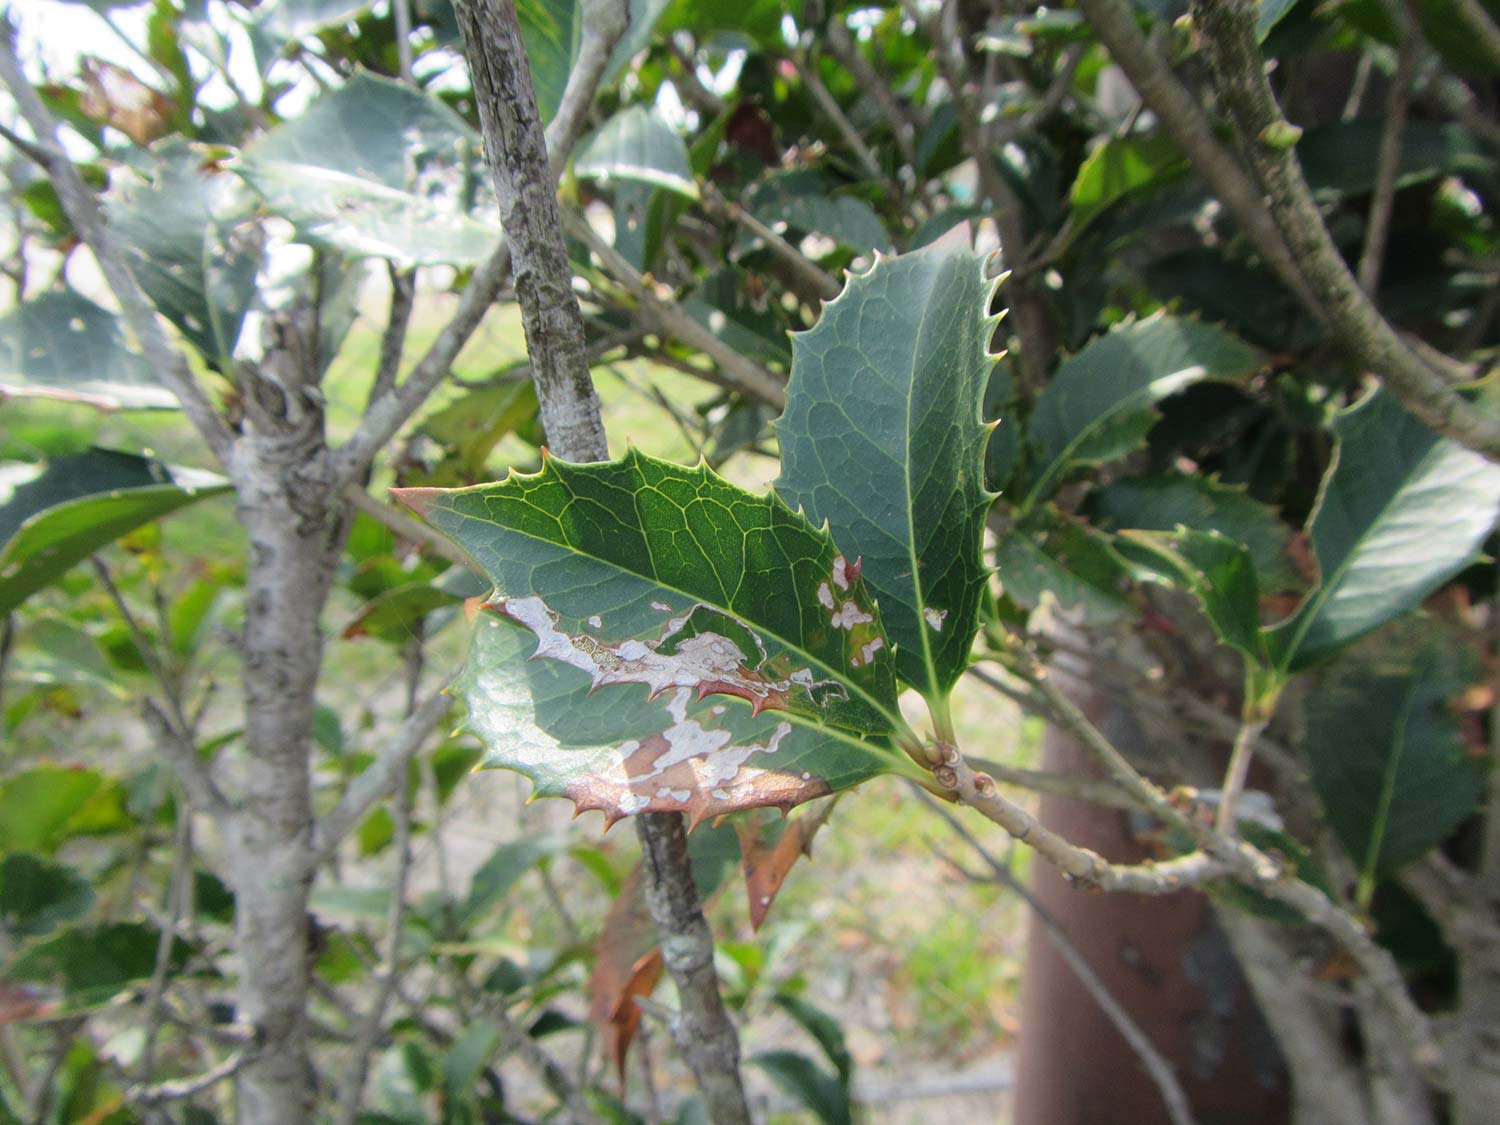 葉が食害される ヒイラギモクセイ 症状と対処方法 樹木診断 樹木診断と松くい虫被害対策 出雲市農林水産部森林政策課